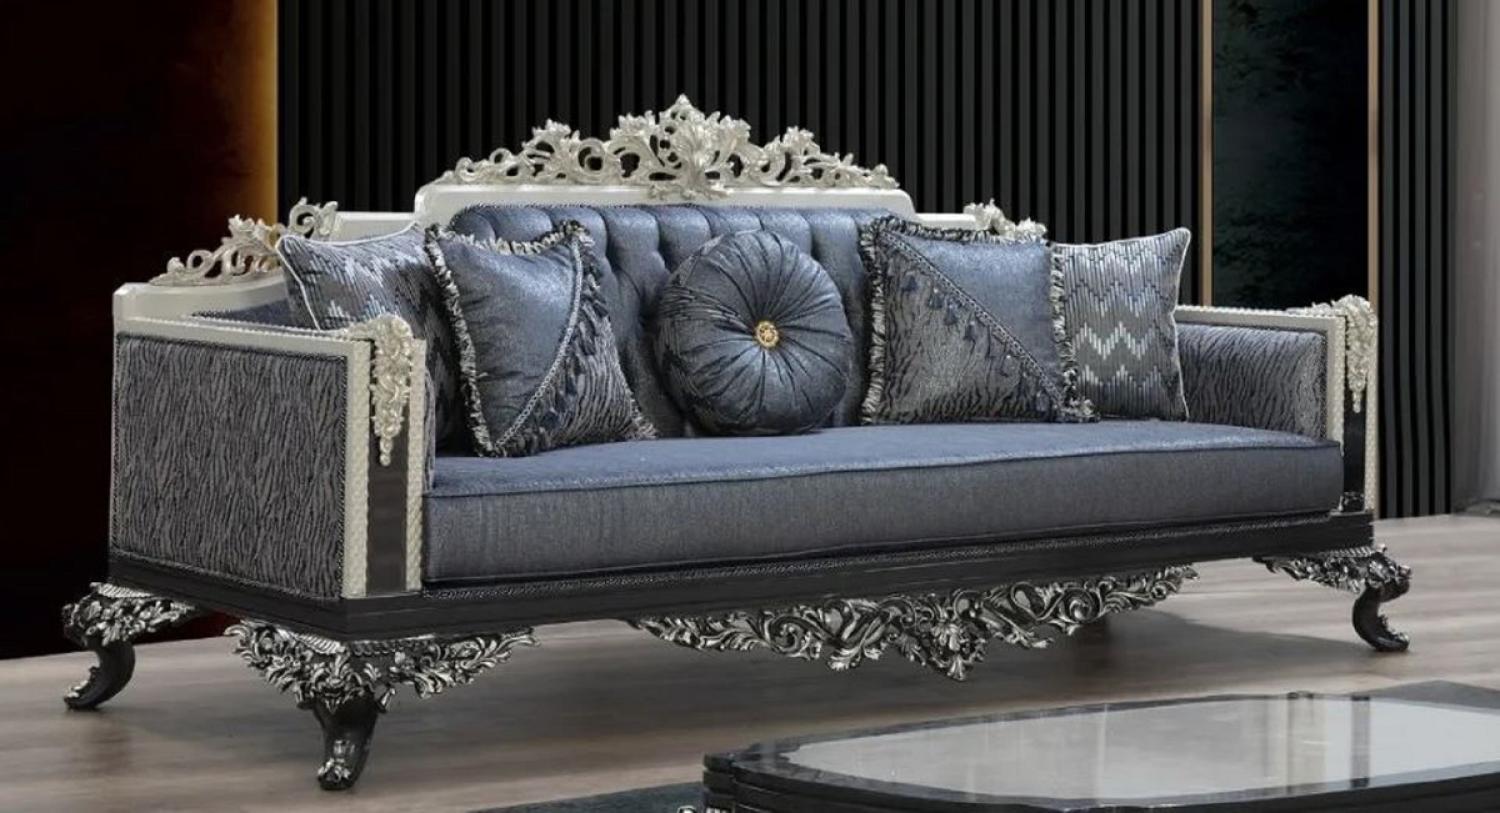 Casa Padrino Luxus Barock Sofa Blau / Grau / Weiß / Schwarz / Silber - Prunkvolles Wohnzimmer Sofa mit elegantem Muster - Barock Wohnzimmer & Hotel Möbel - Edel & Prunkvoll Bild 1